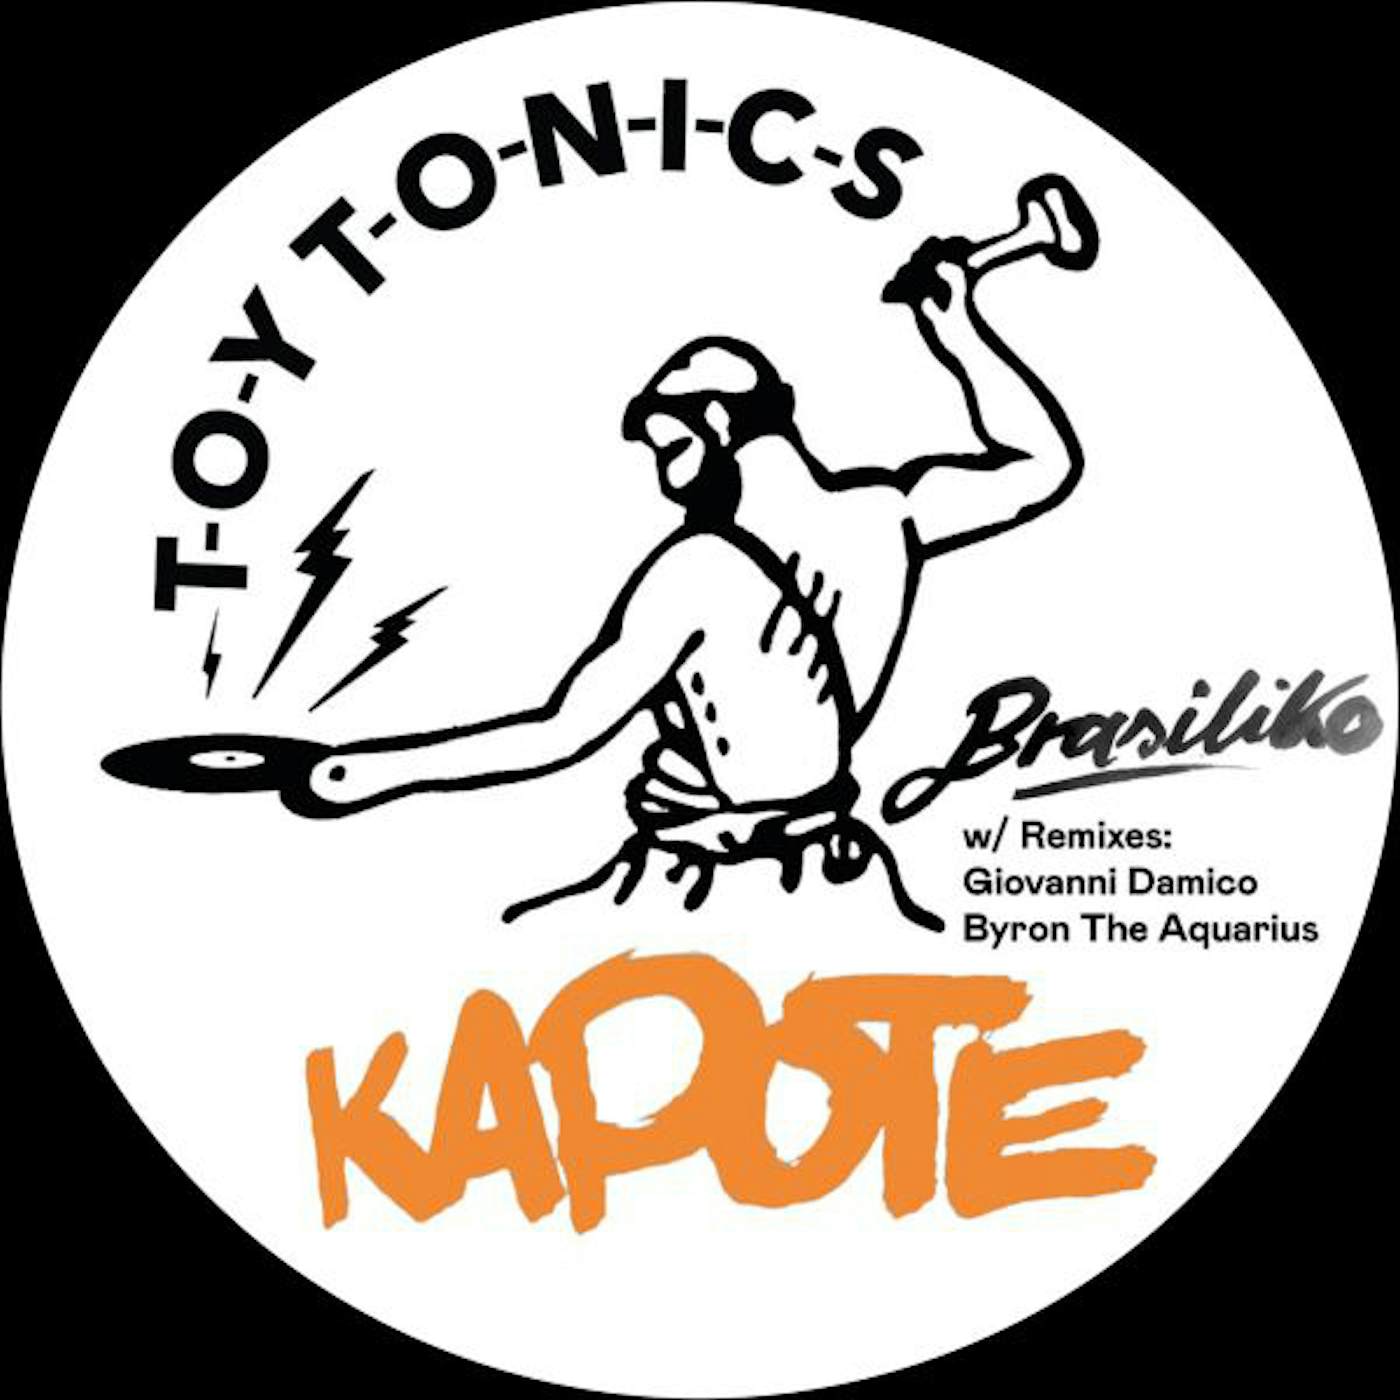 Kapote Brasiliko Vinyl Record